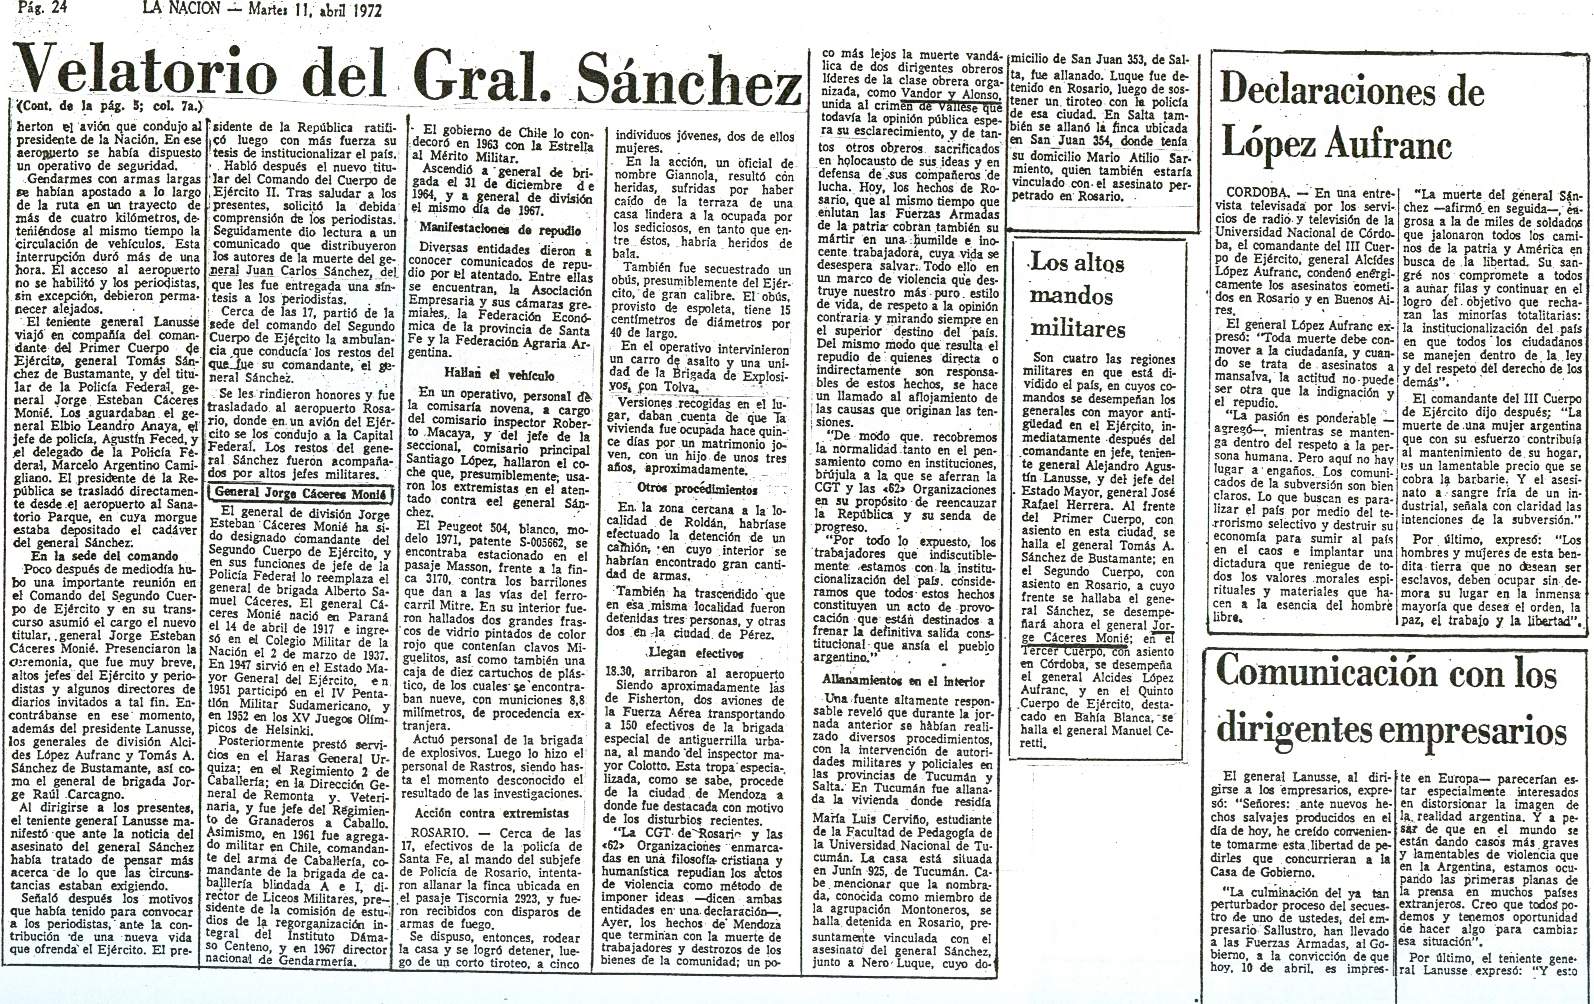 [1972-11-04+La+Nacion+-+Asesinatos+de+gral+Sanchez+y+Dr+Oberdan+Sallustro+22.jpg]